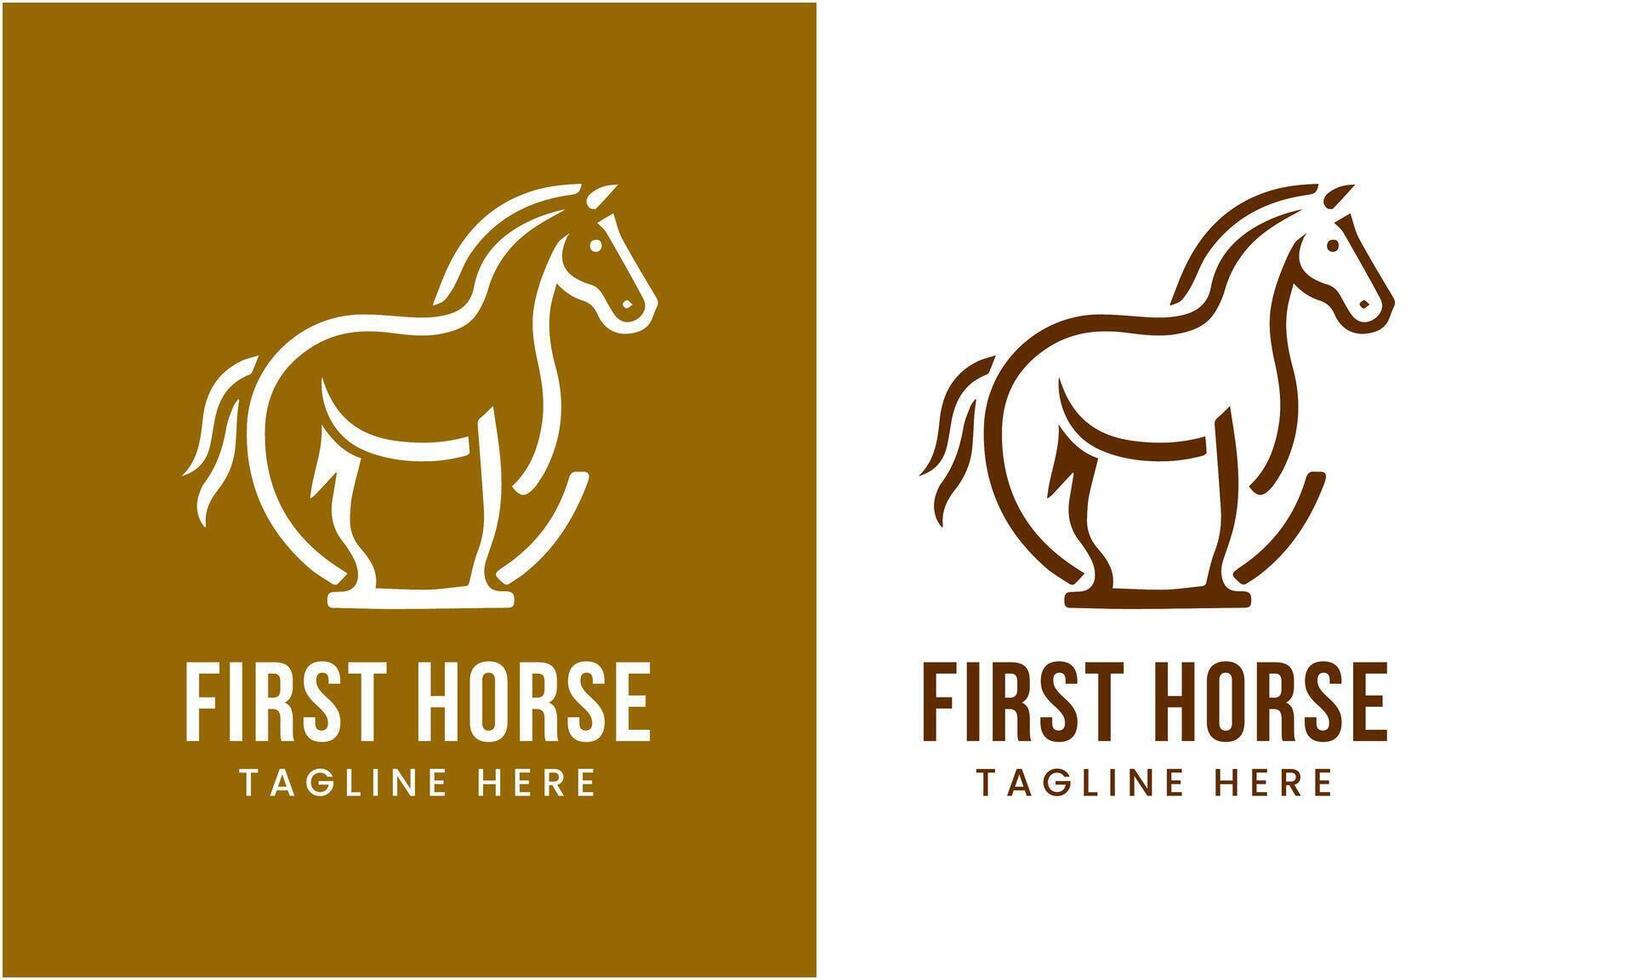 AI generated Horse minimalist modern unique logo icon symbol idea vector graphic design template